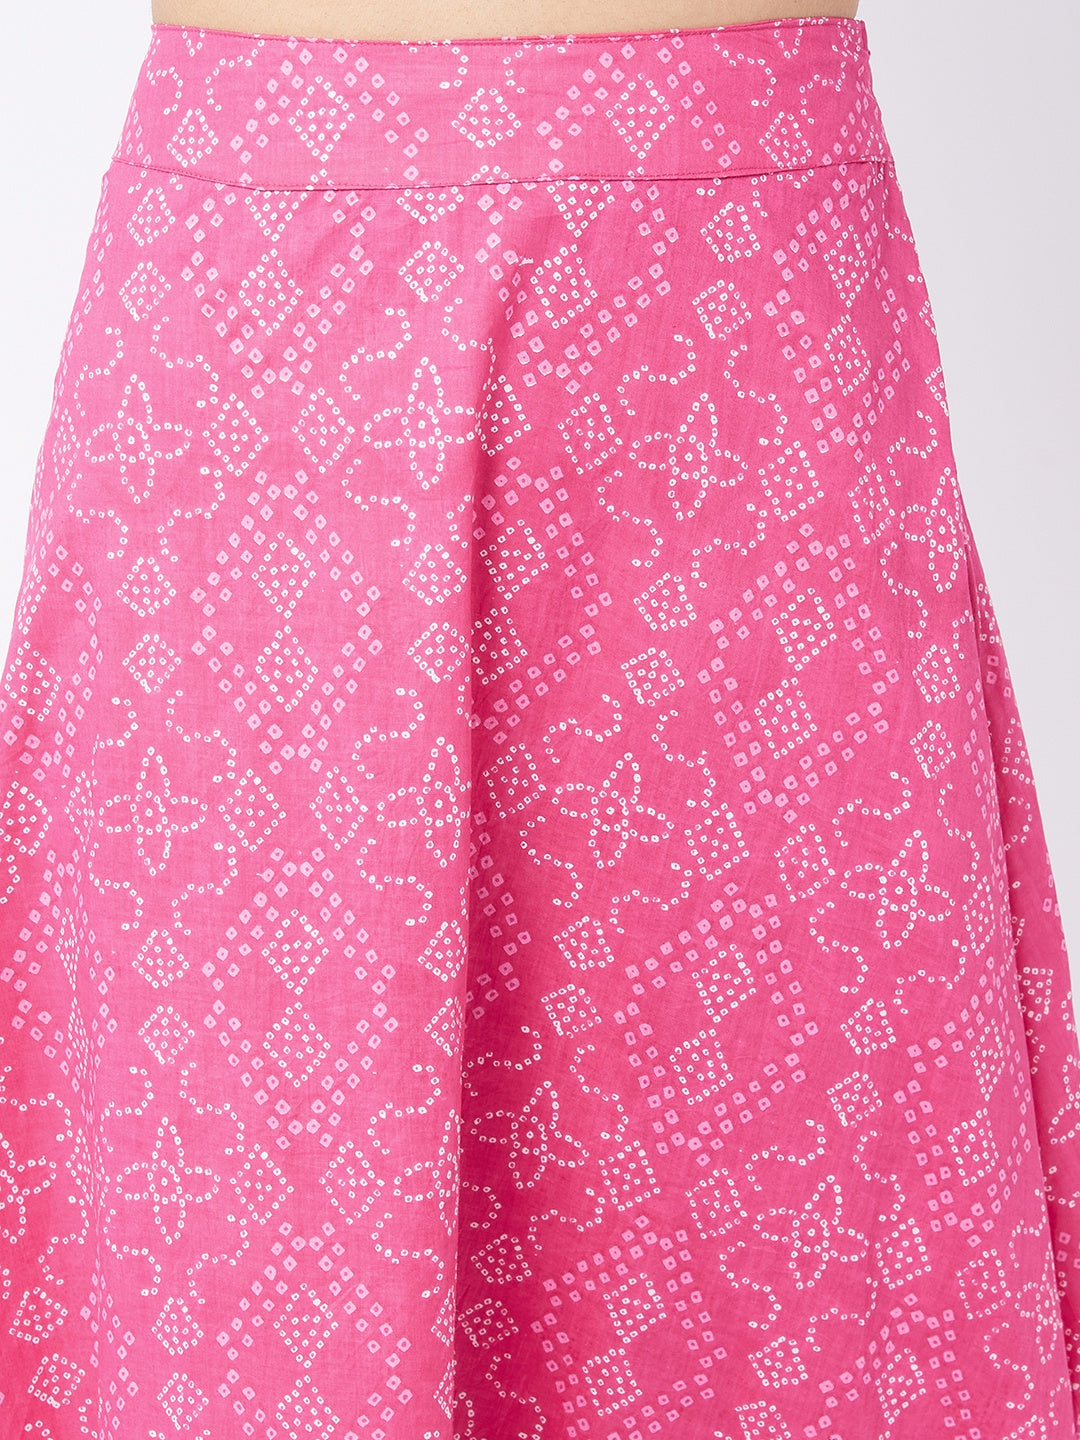 Ruby Pink Side Slit Long Skirt